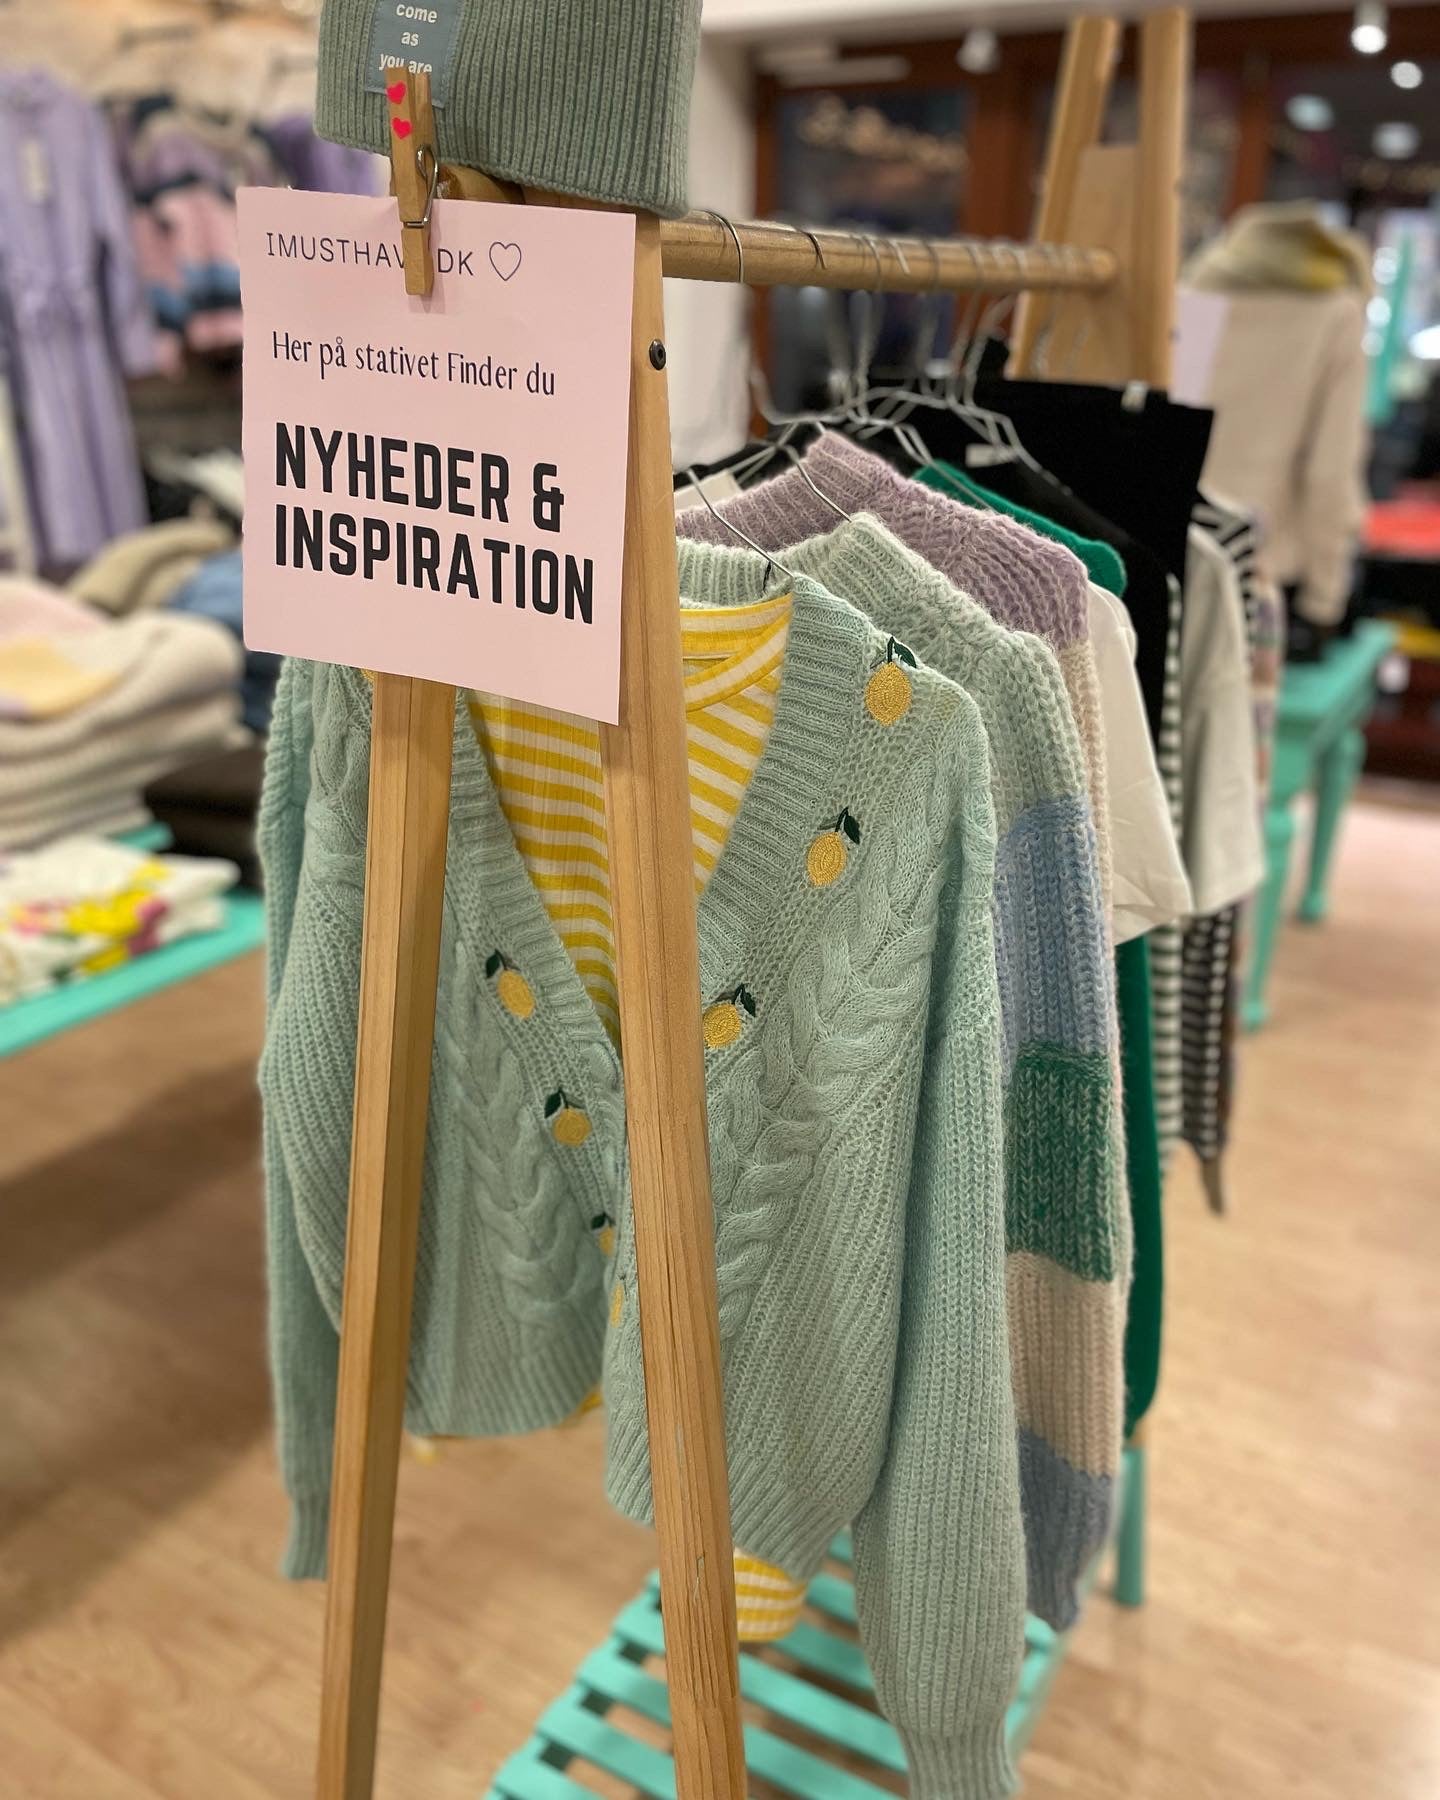 : Shop Modetøj til Kvinder og Unge Piger fra Bestseller – imusthave.dk